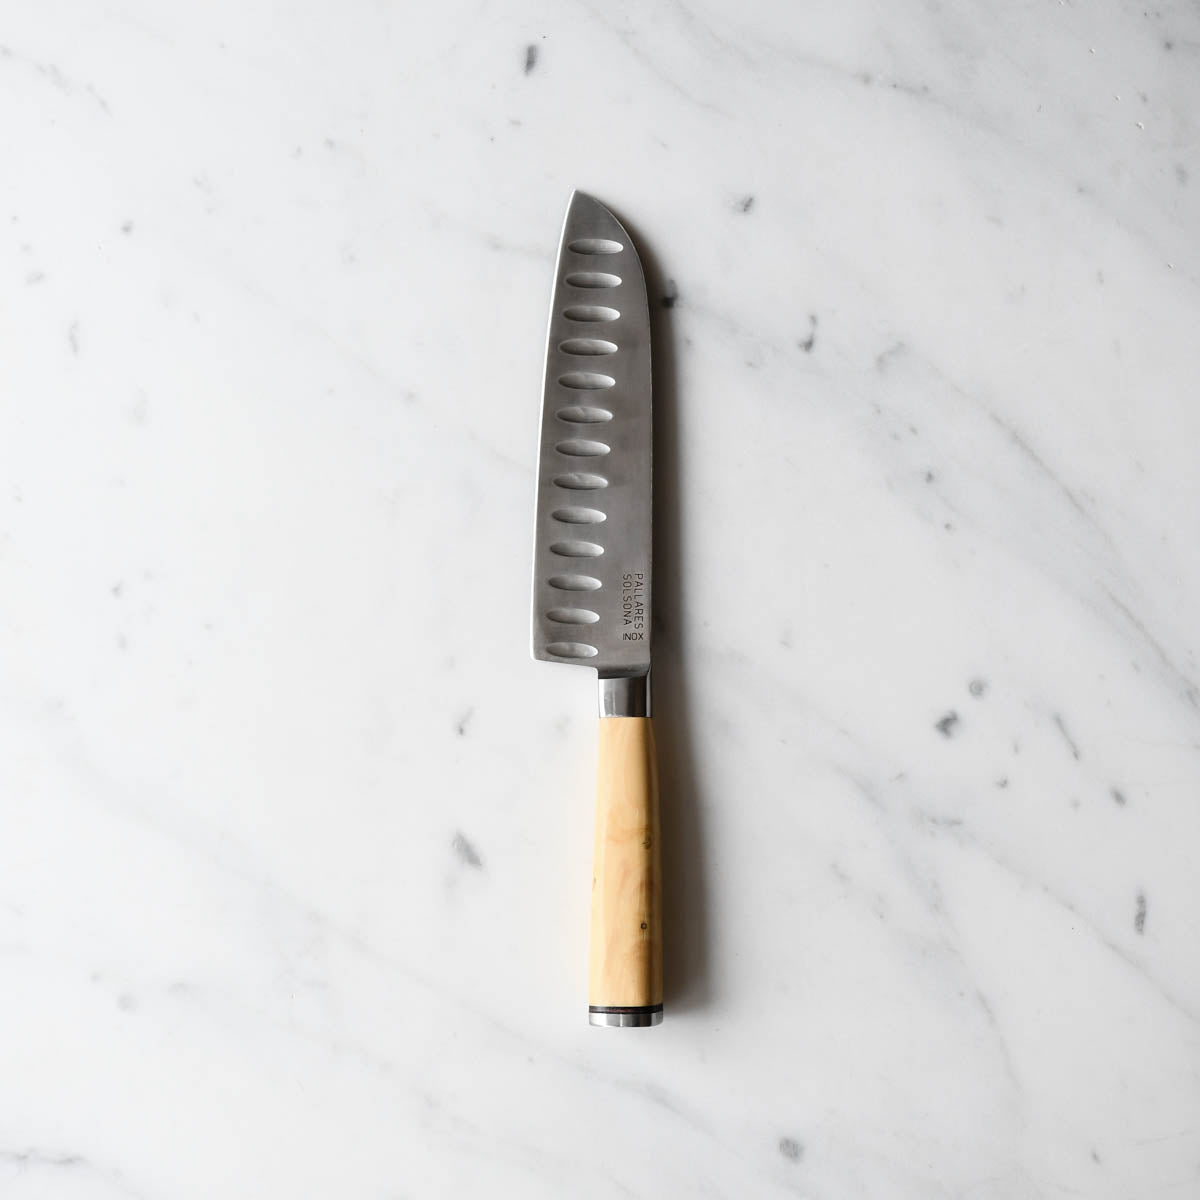 Rustic Knife Pallares Solsona / Original